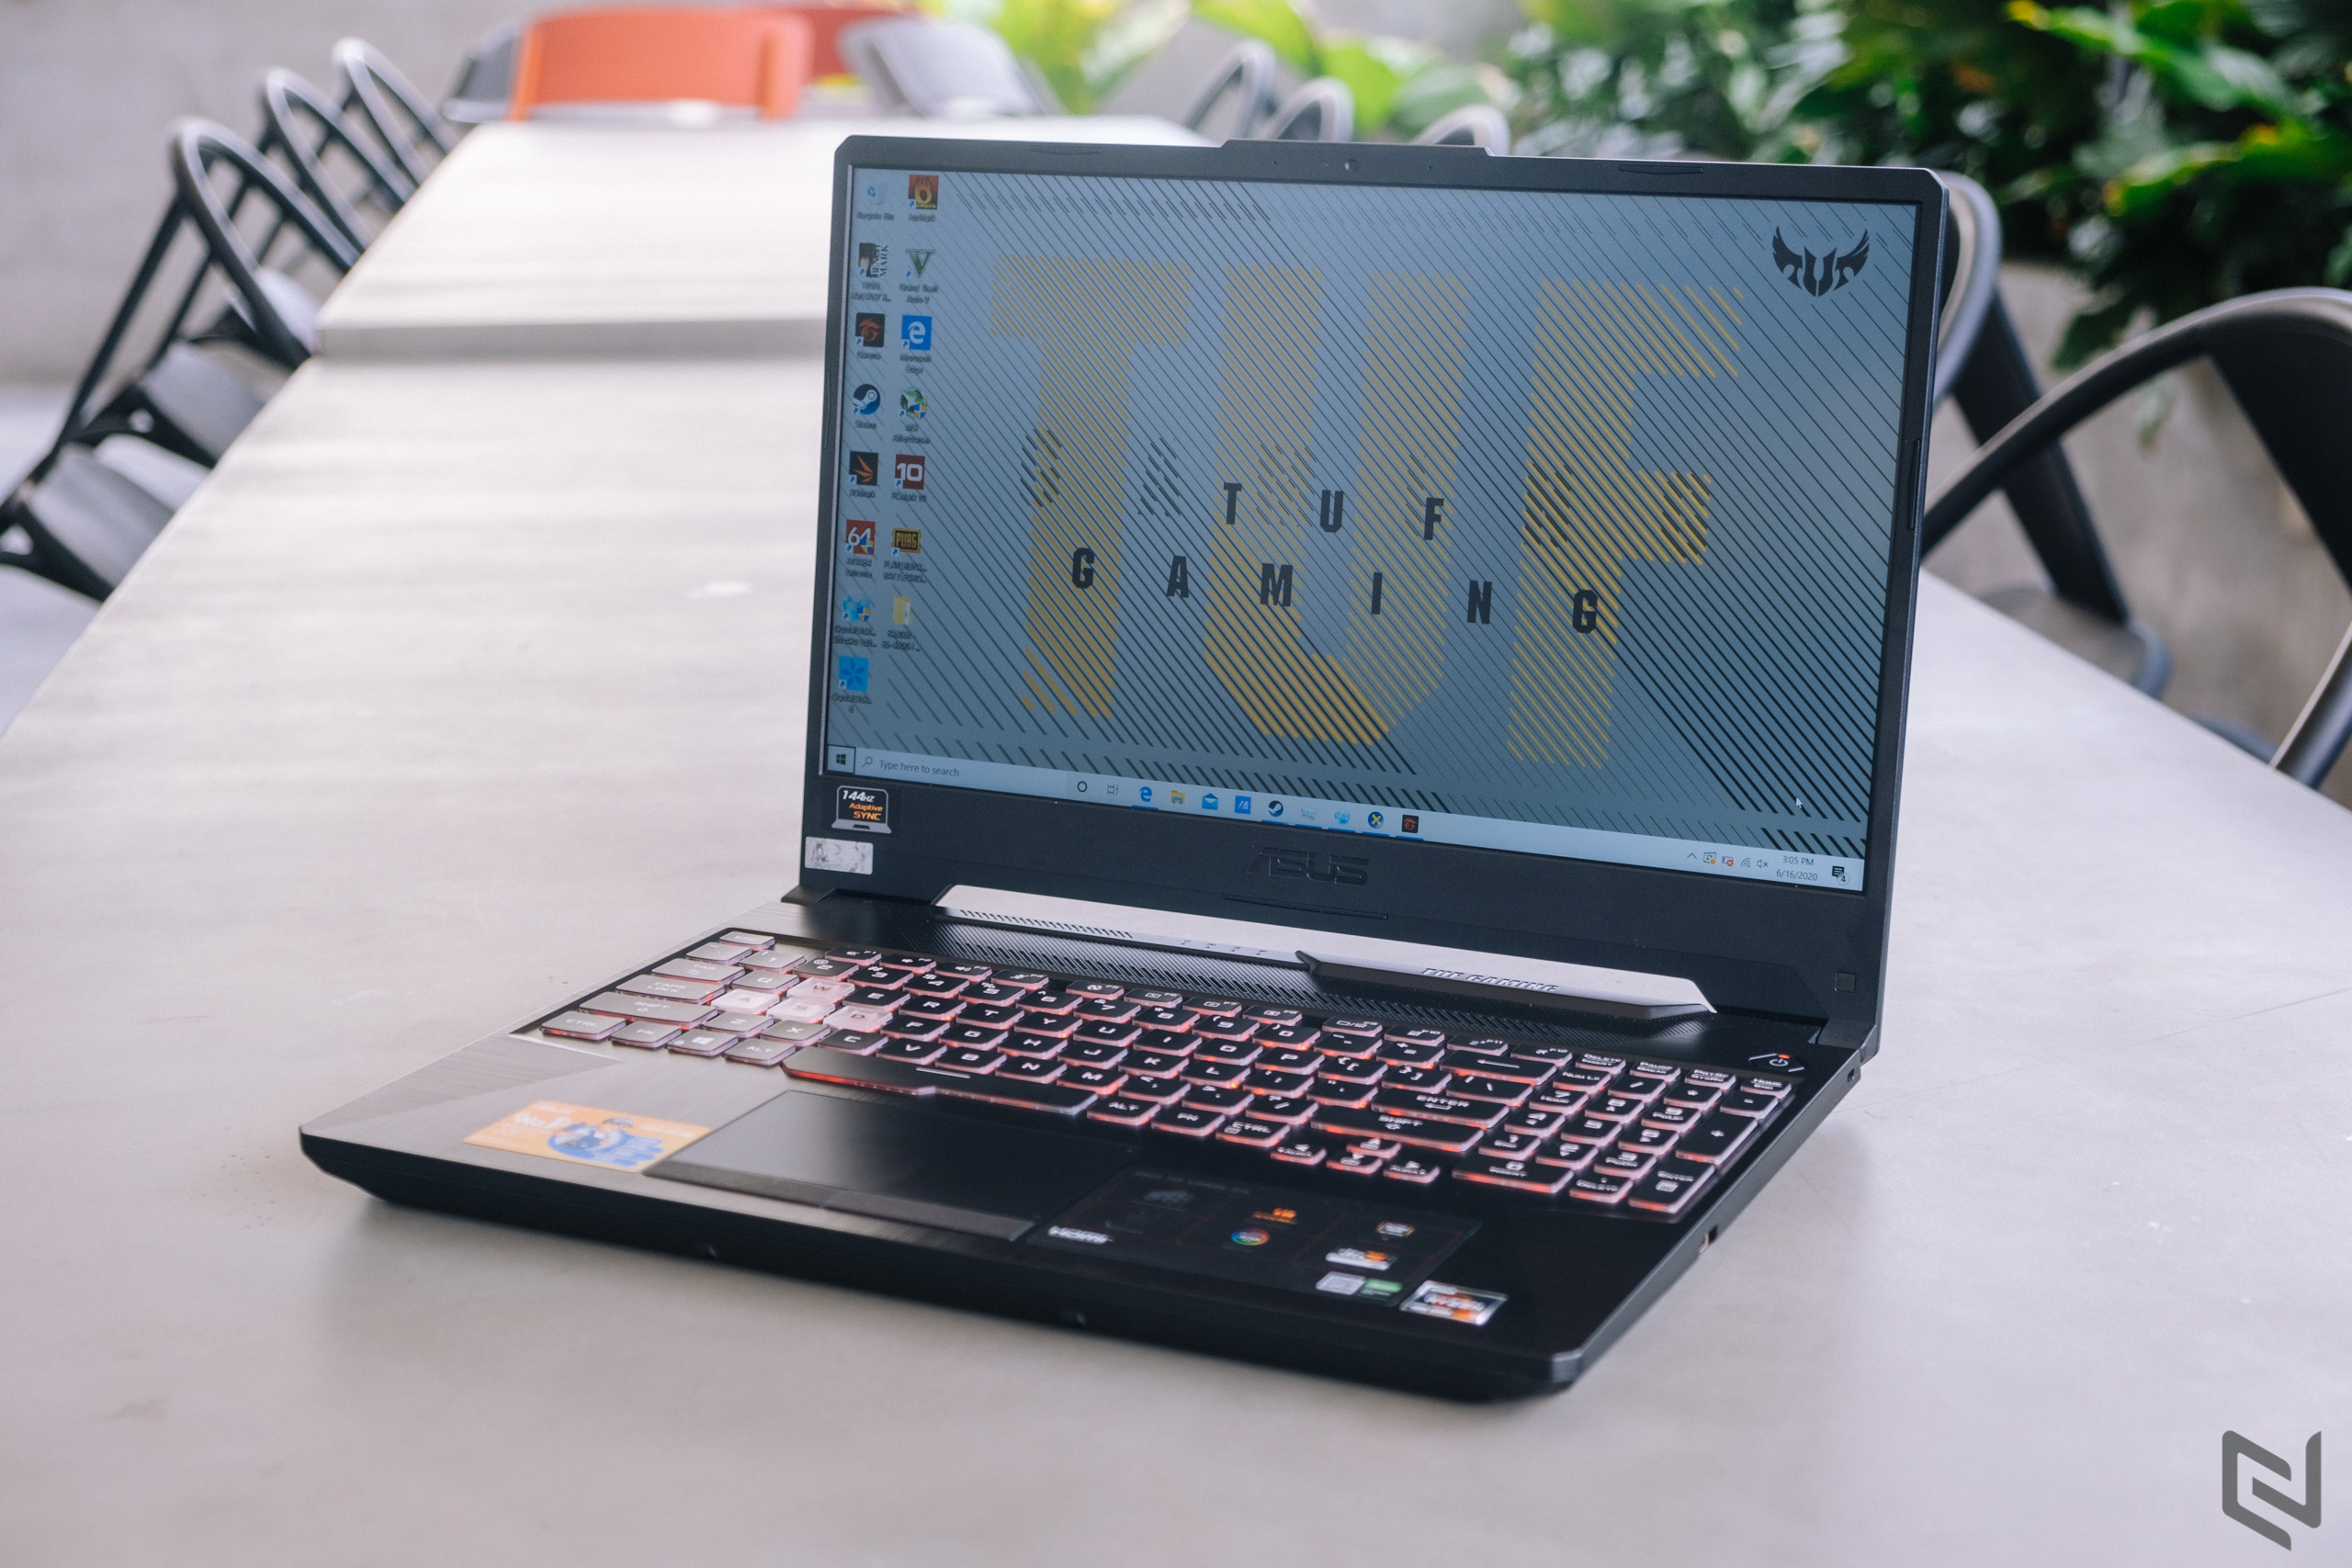 ASUS giới thiệu dòng laptop, desktop gaming 2020 tích hợp CPU AMD Ryzen